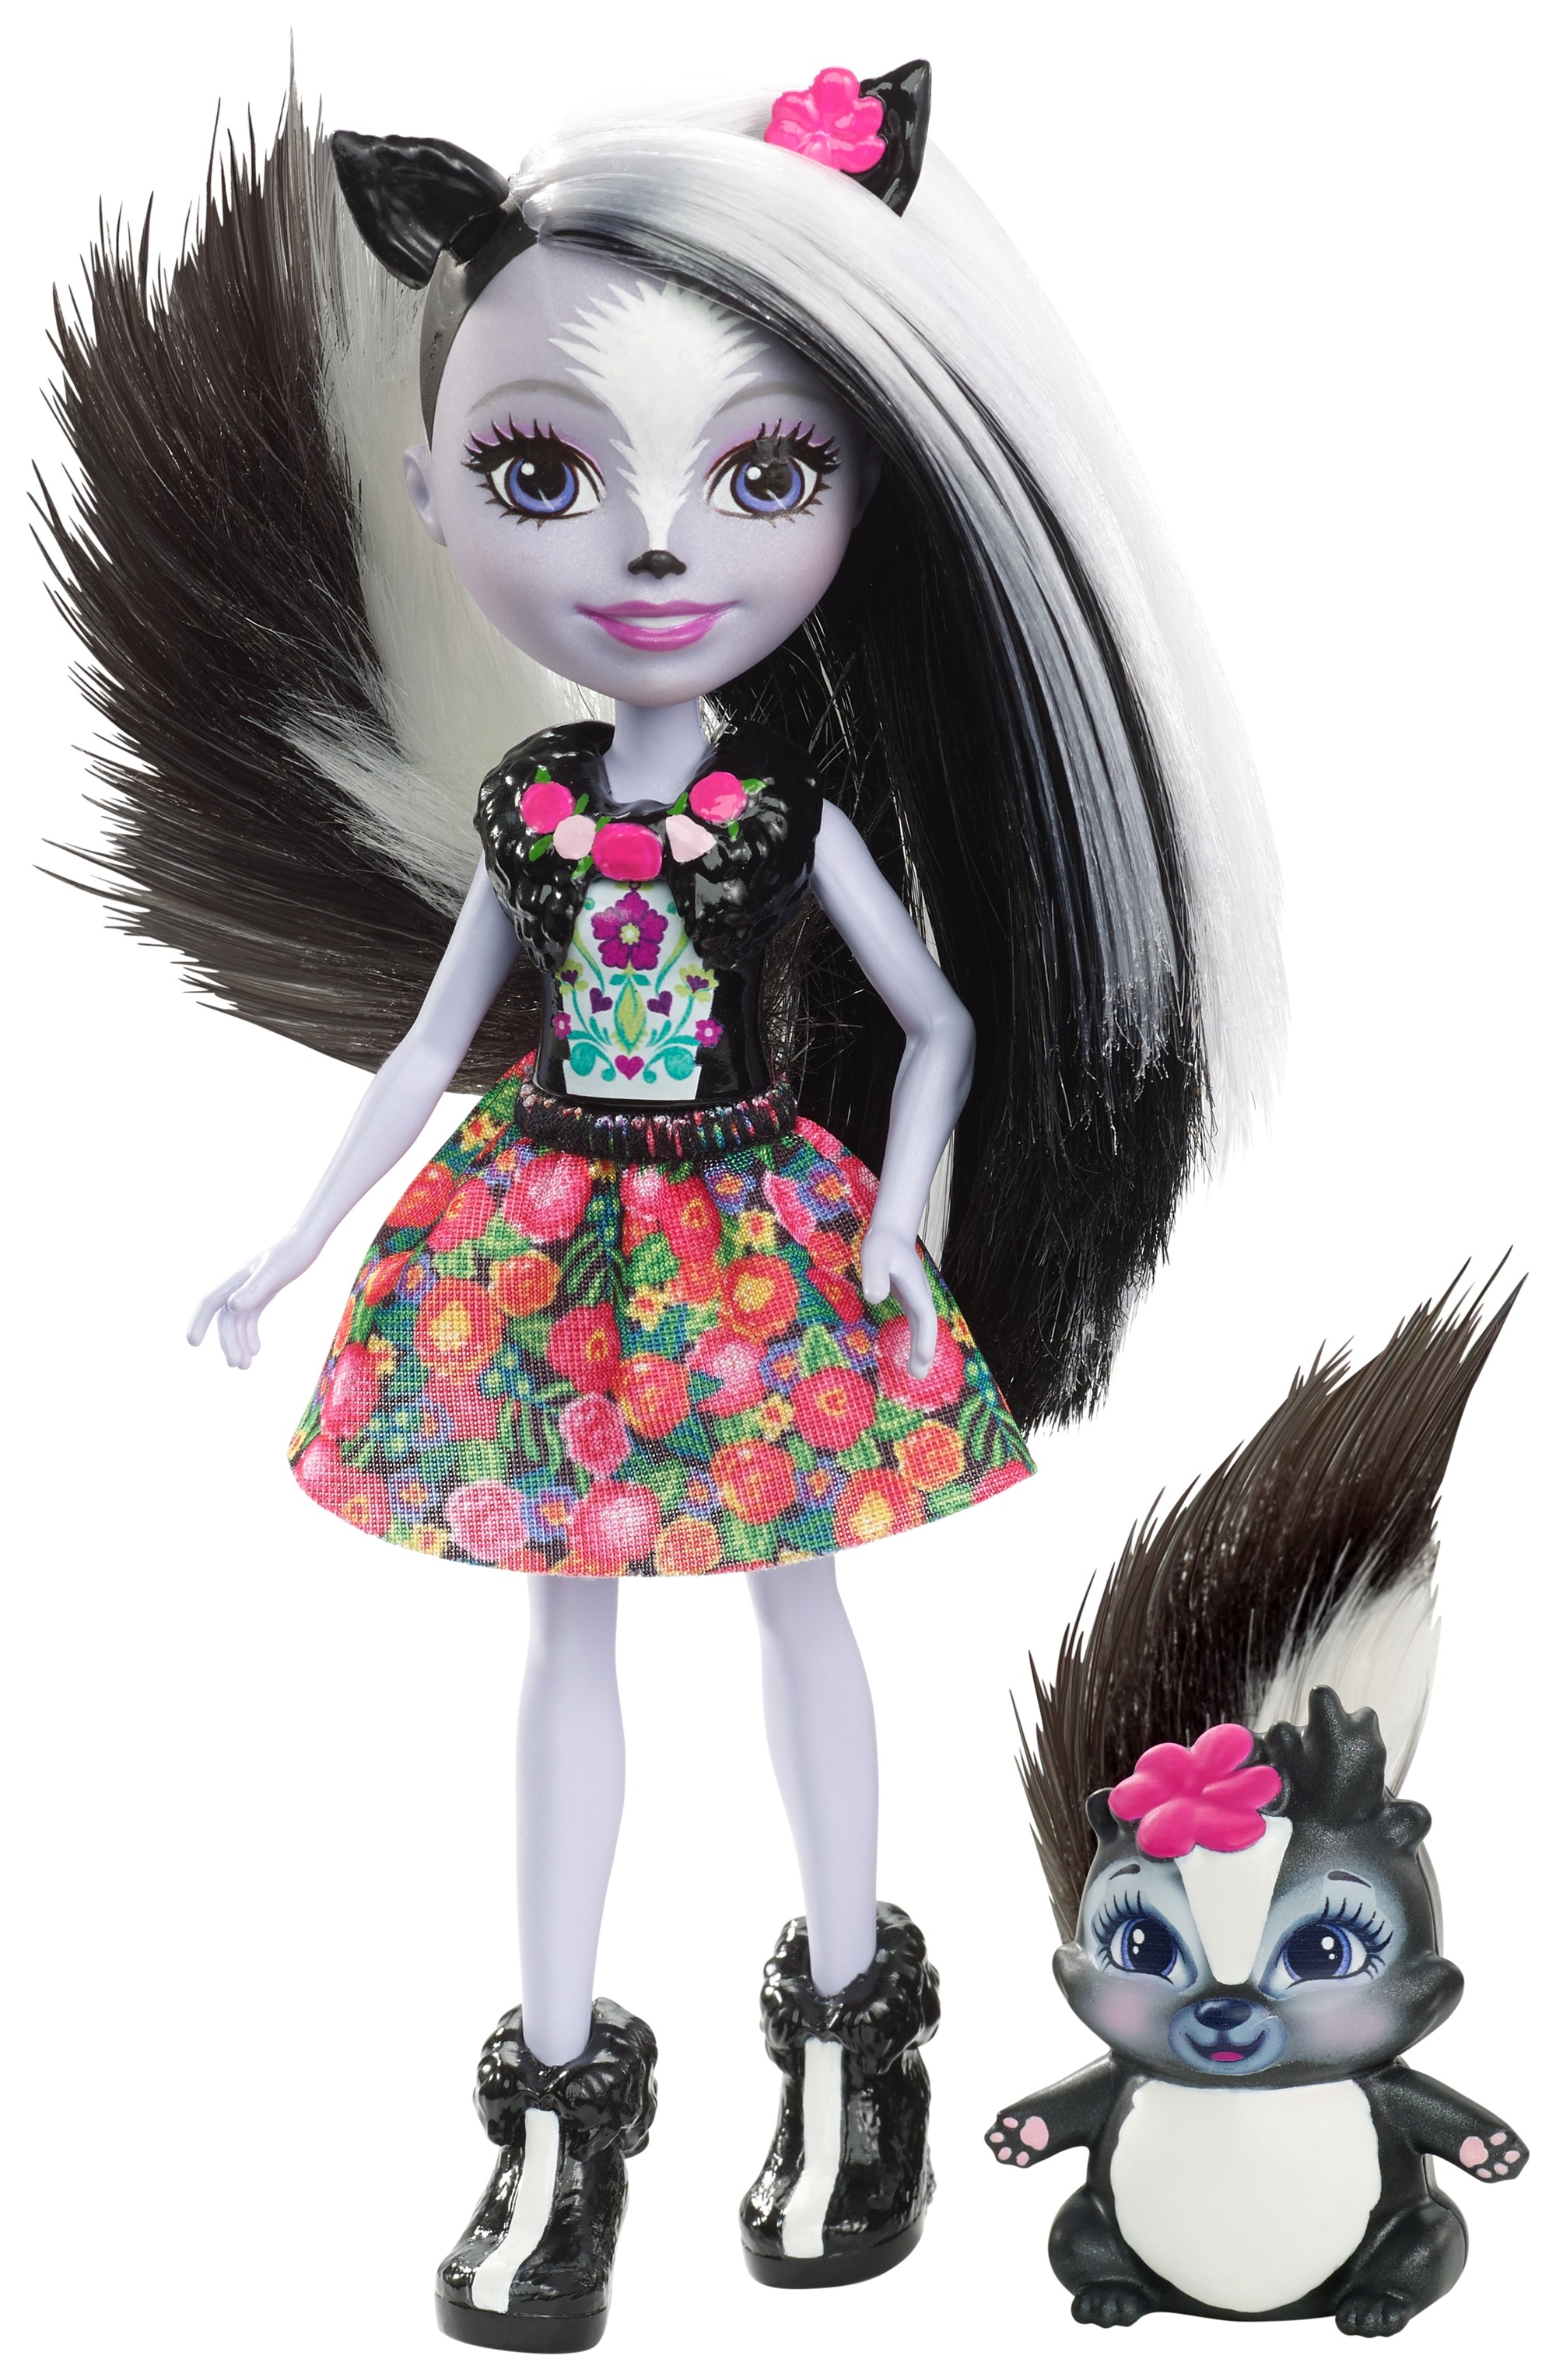 Кукла Скунси Седж с питомцем скунсом Кейпер 15см Enchantimals Mattel DYC75 - фото